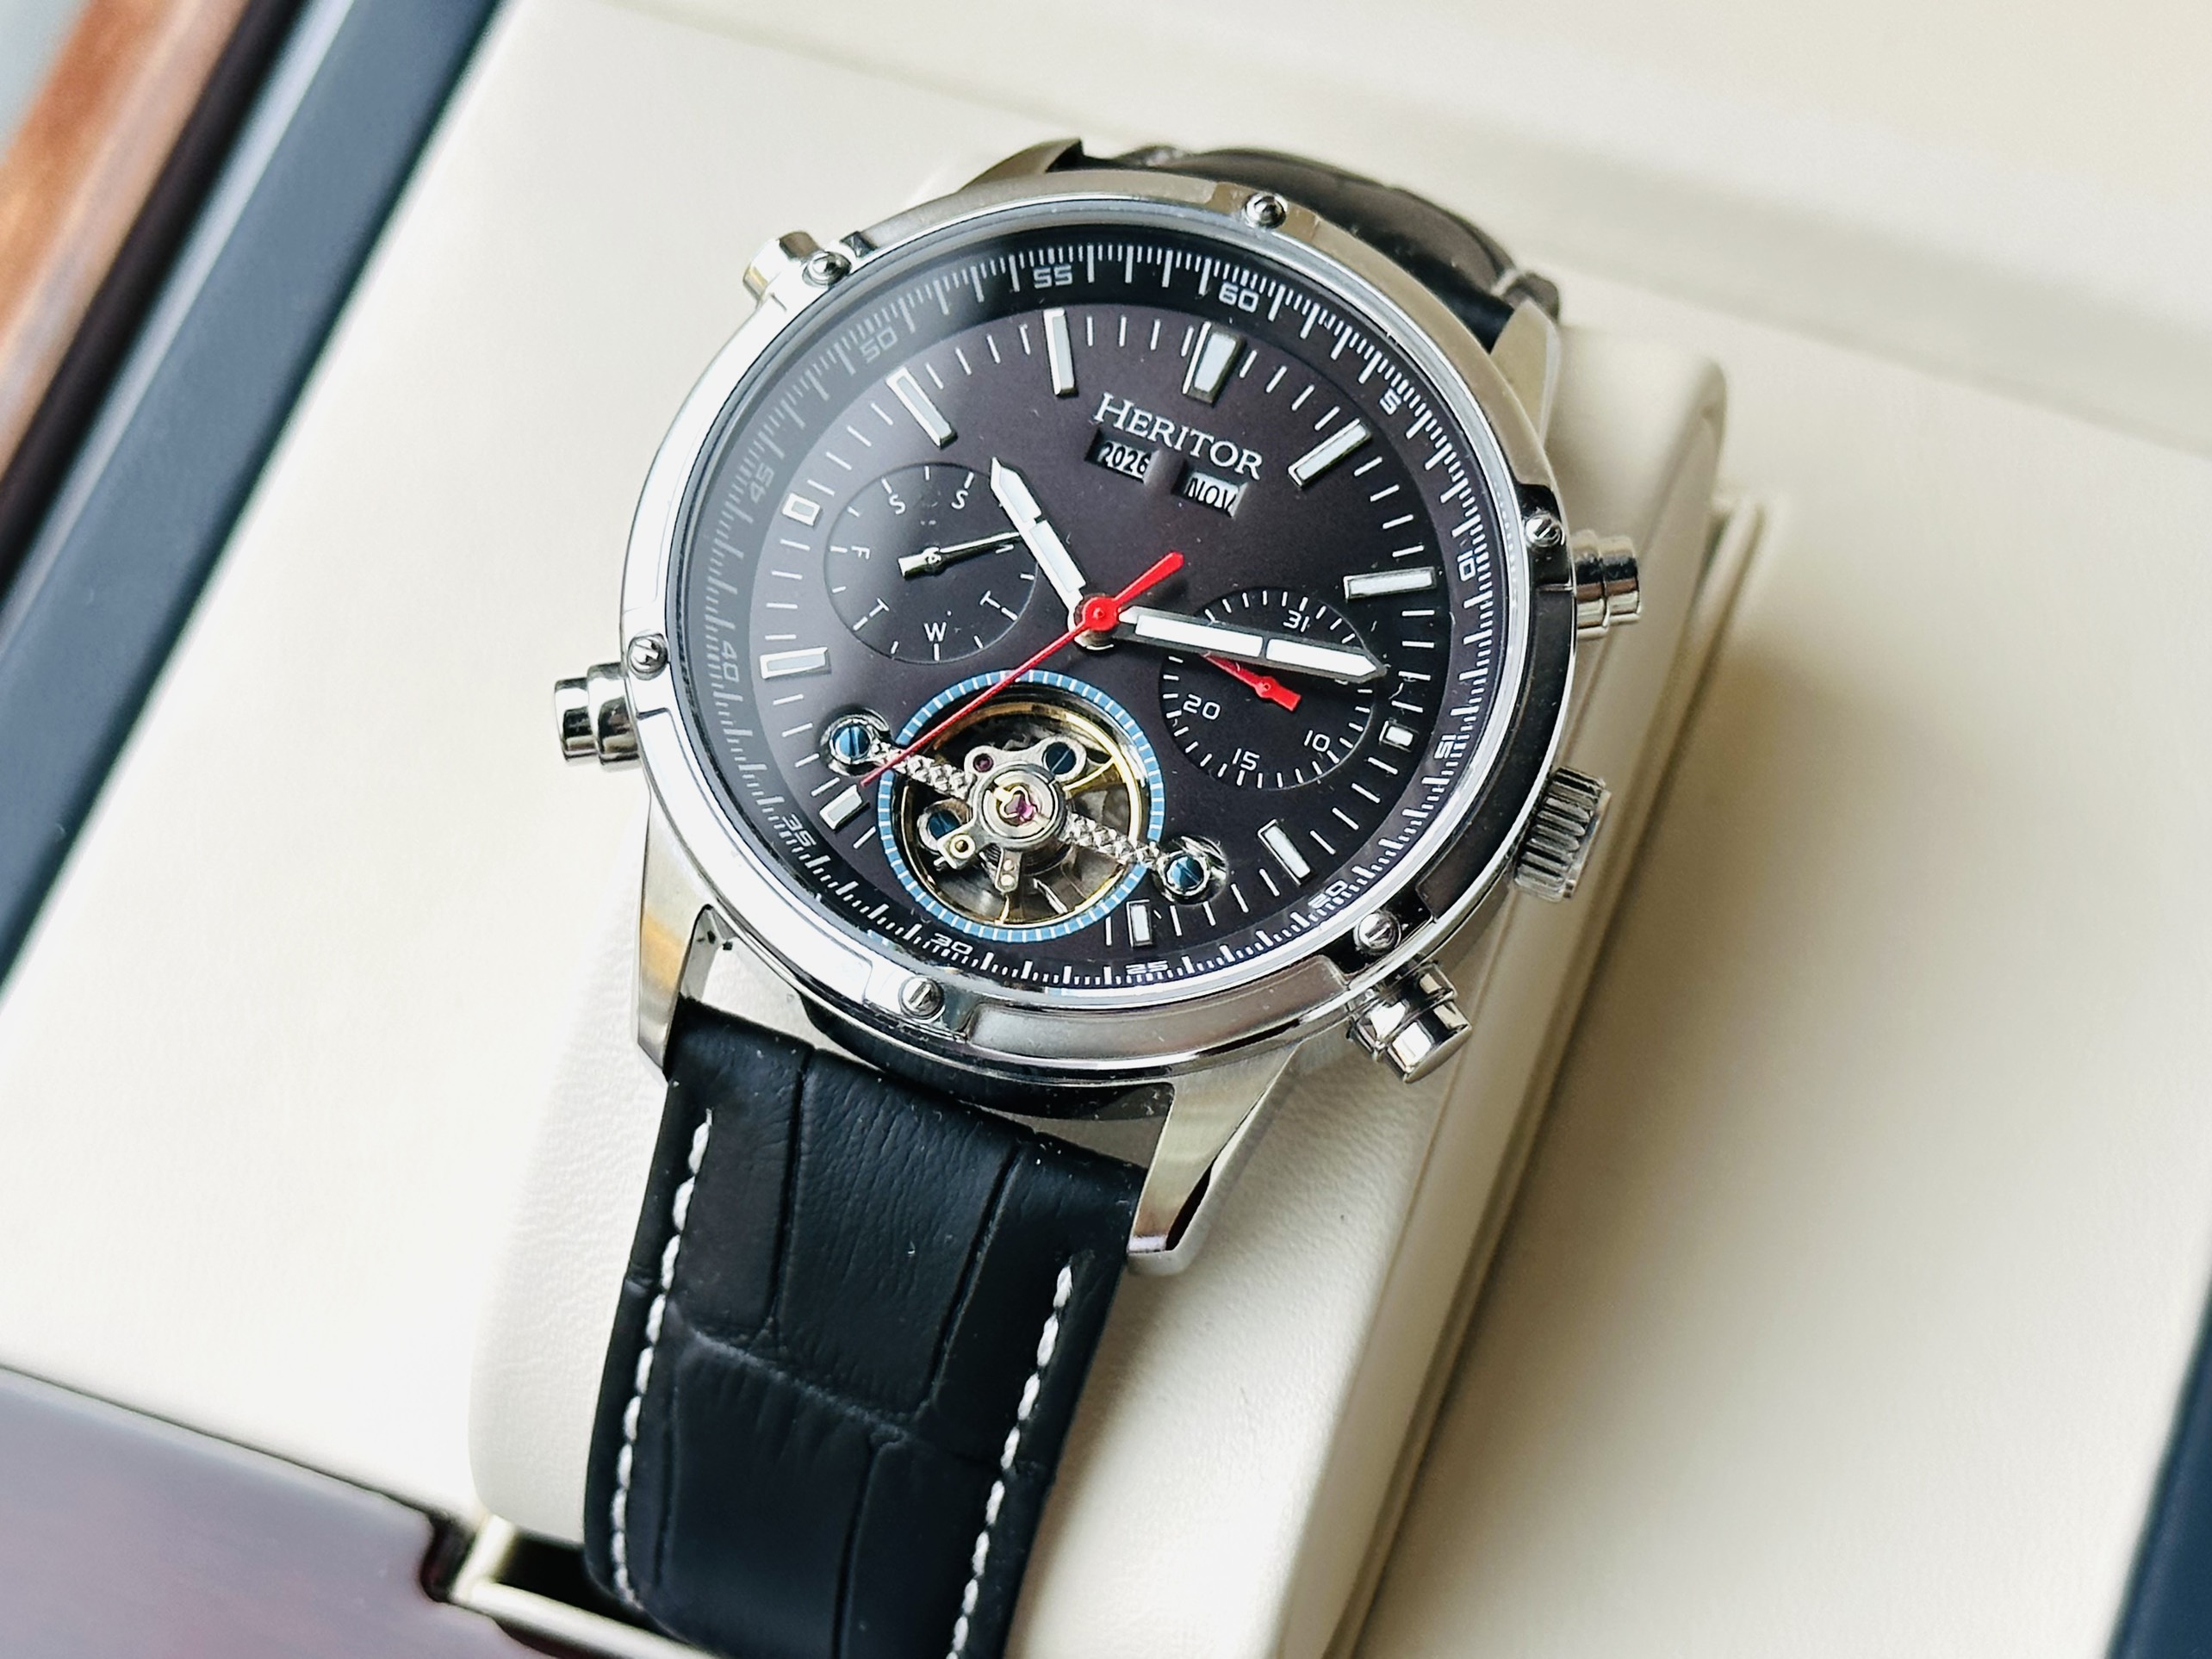 Chiếc đồng hồ “Fast & Furious Twin Turbo” có giá gần 13,5 tỷ đồng